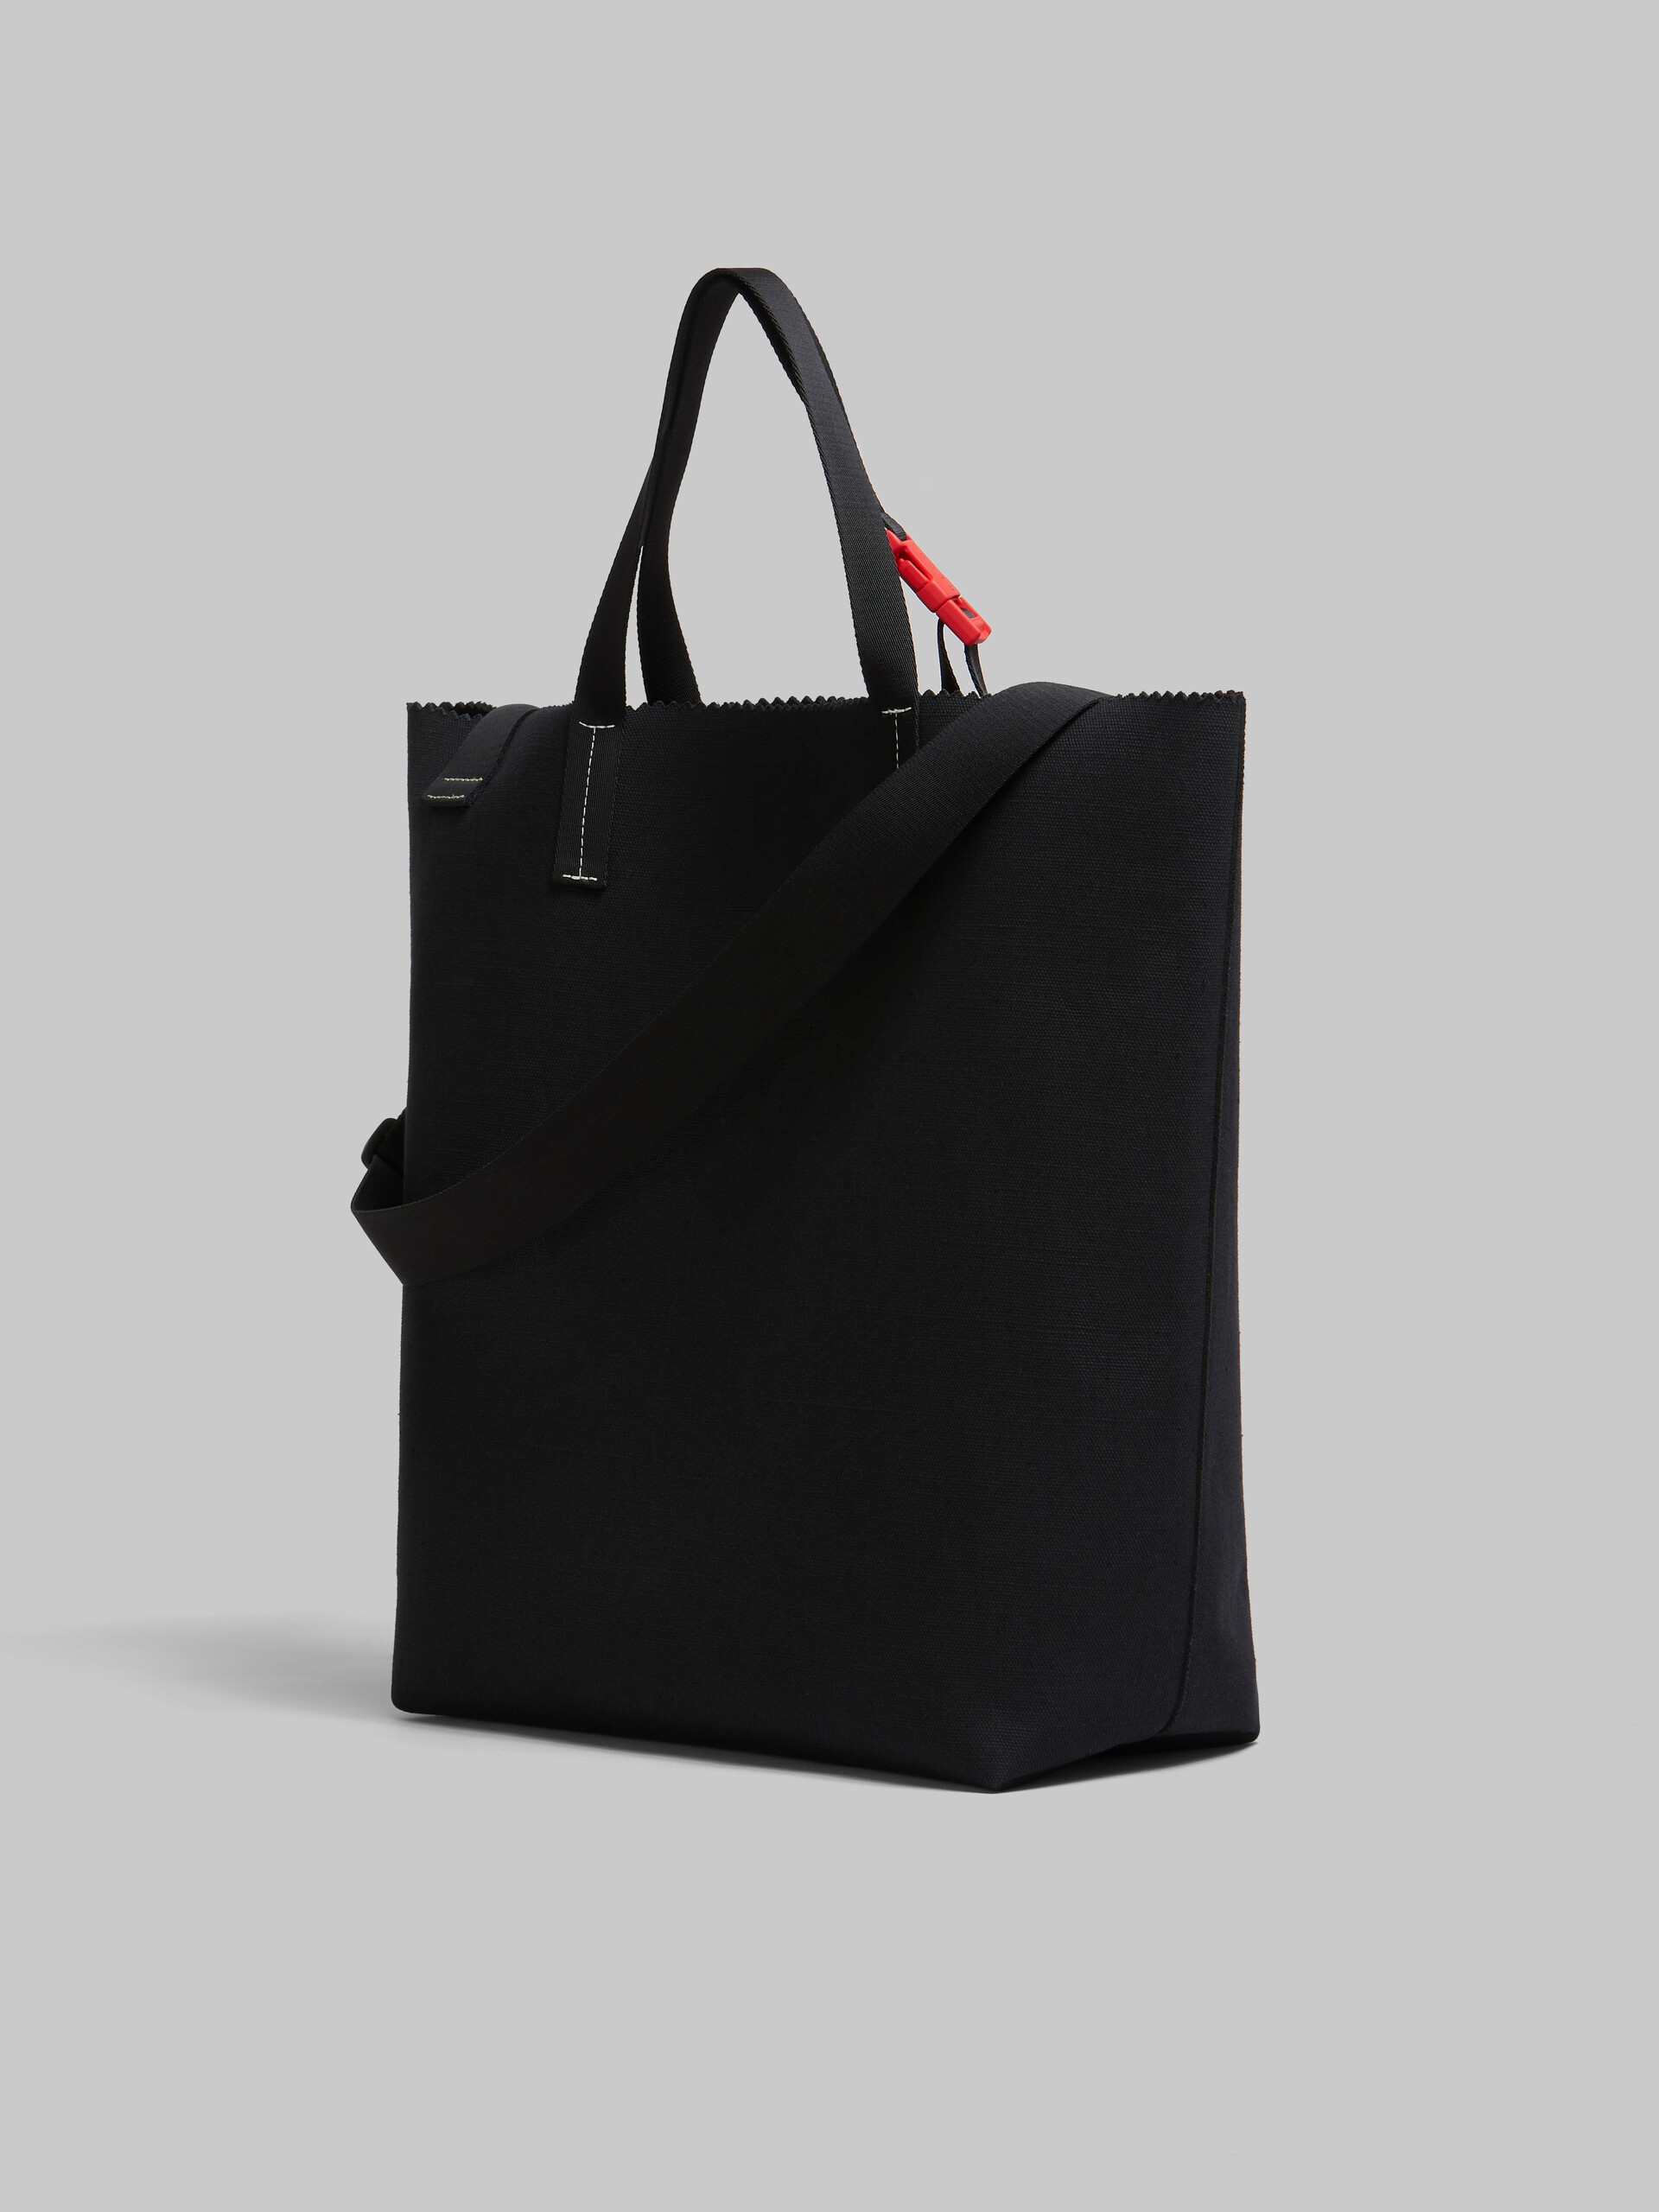 ブラック キャンバス製 Tribeca ショッパー、レイズド マルニロゴ - ショッピングバッグ - Image 3